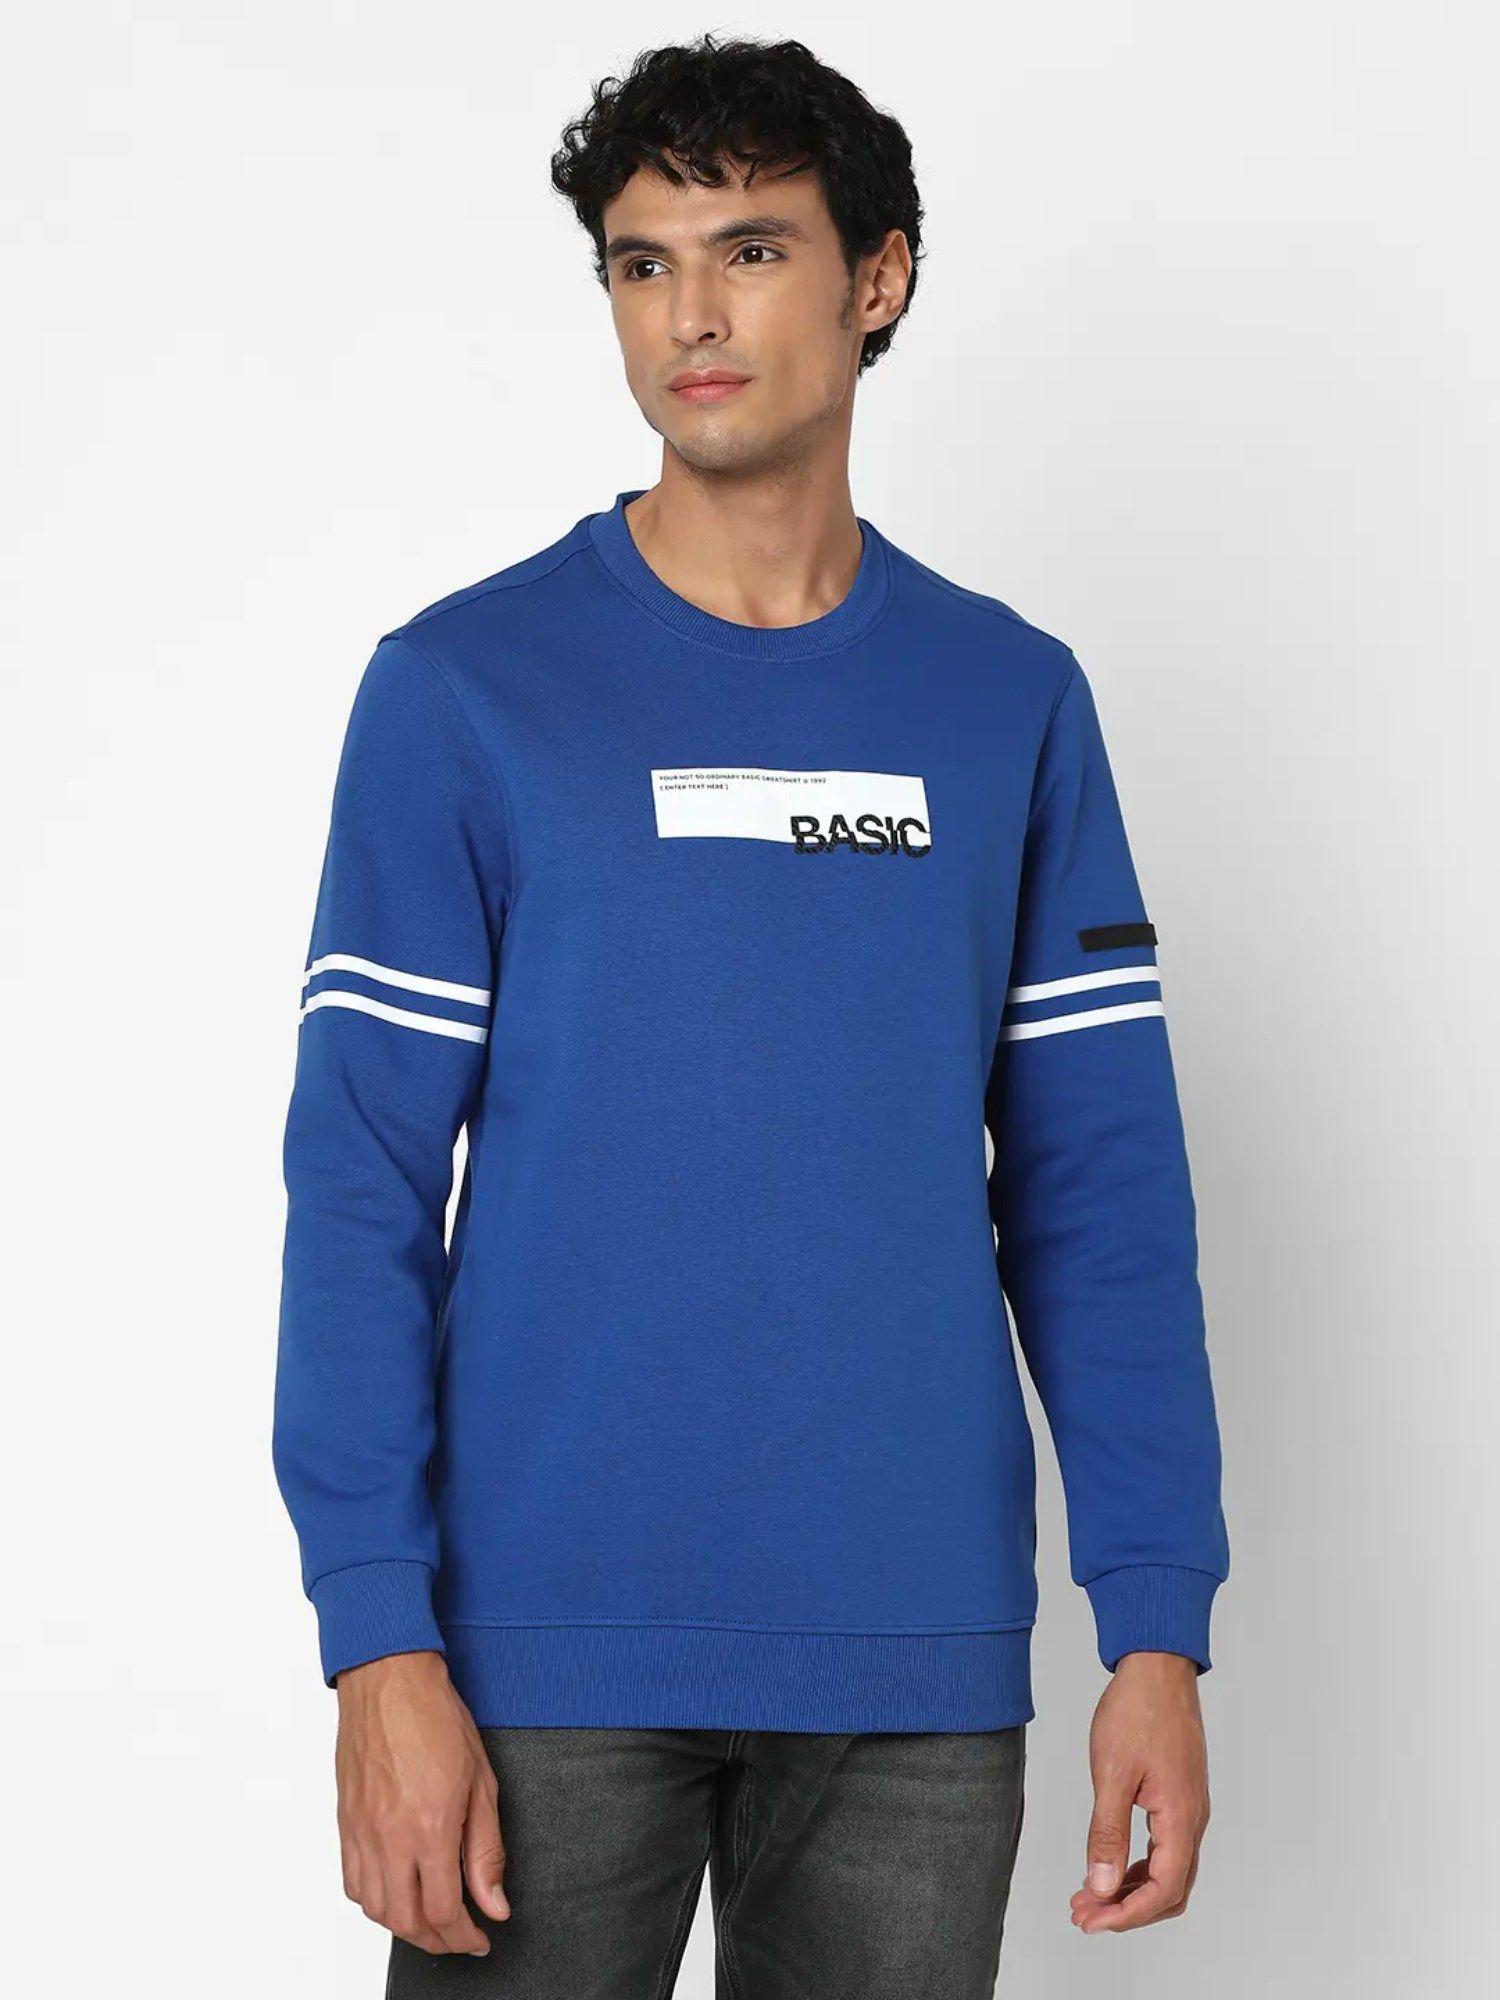 men-electric-blue-slim-fit-full-sleeve-round-neck-printed-sweatshirt